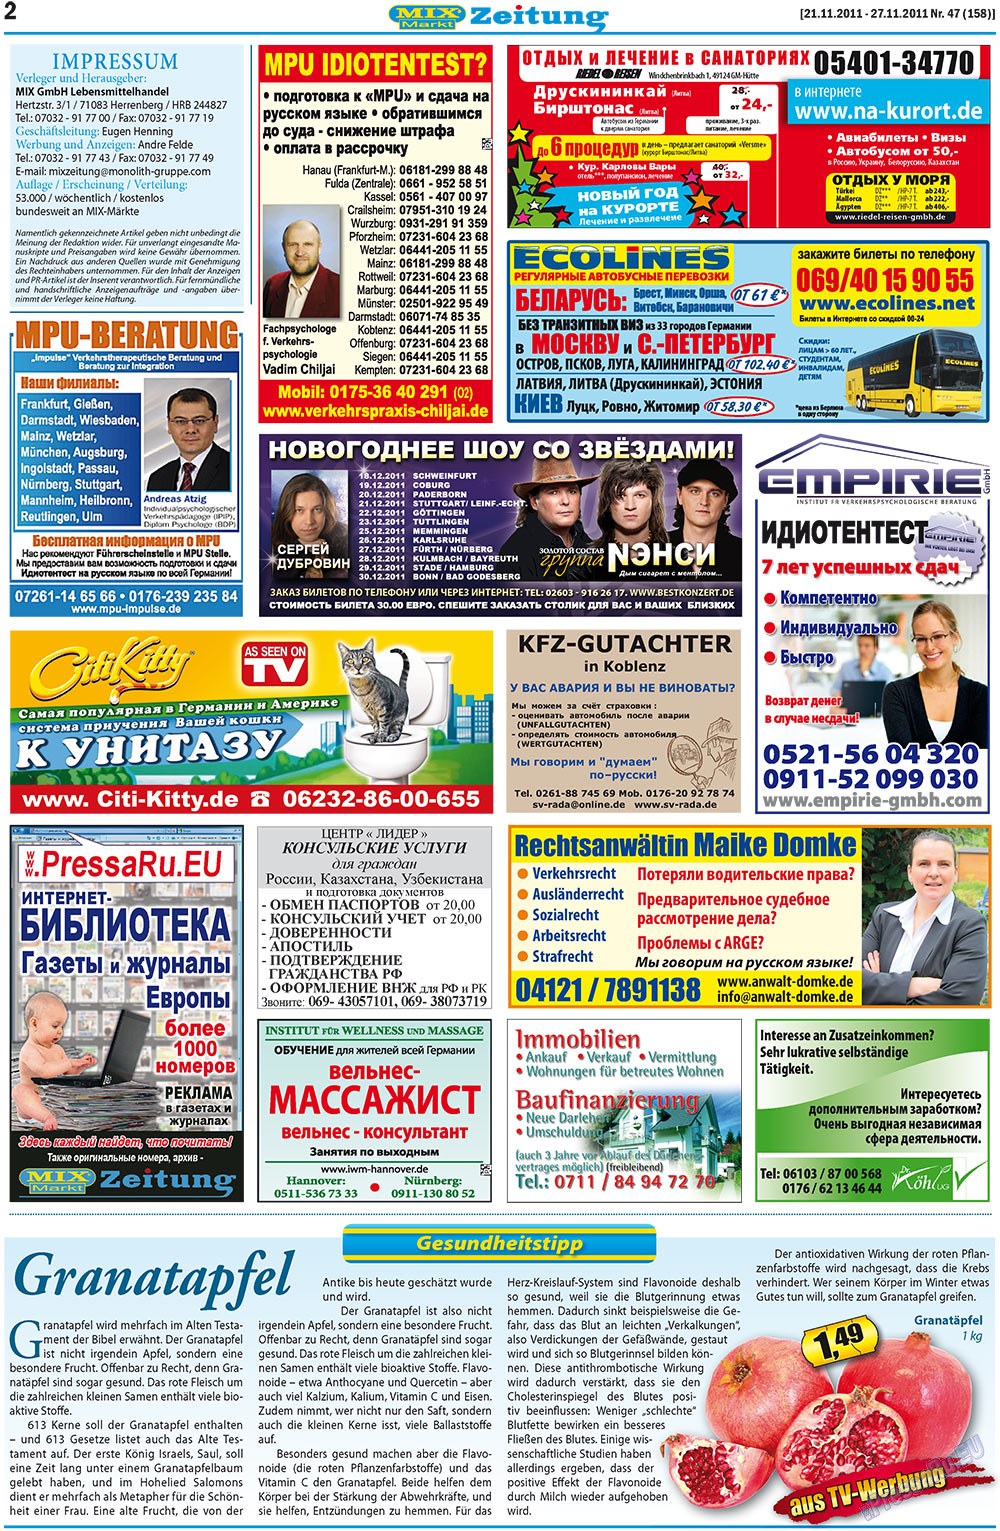 MIX-Markt Zeitung (Zeitung). 2011 Jahr, Ausgabe 47, Seite 2